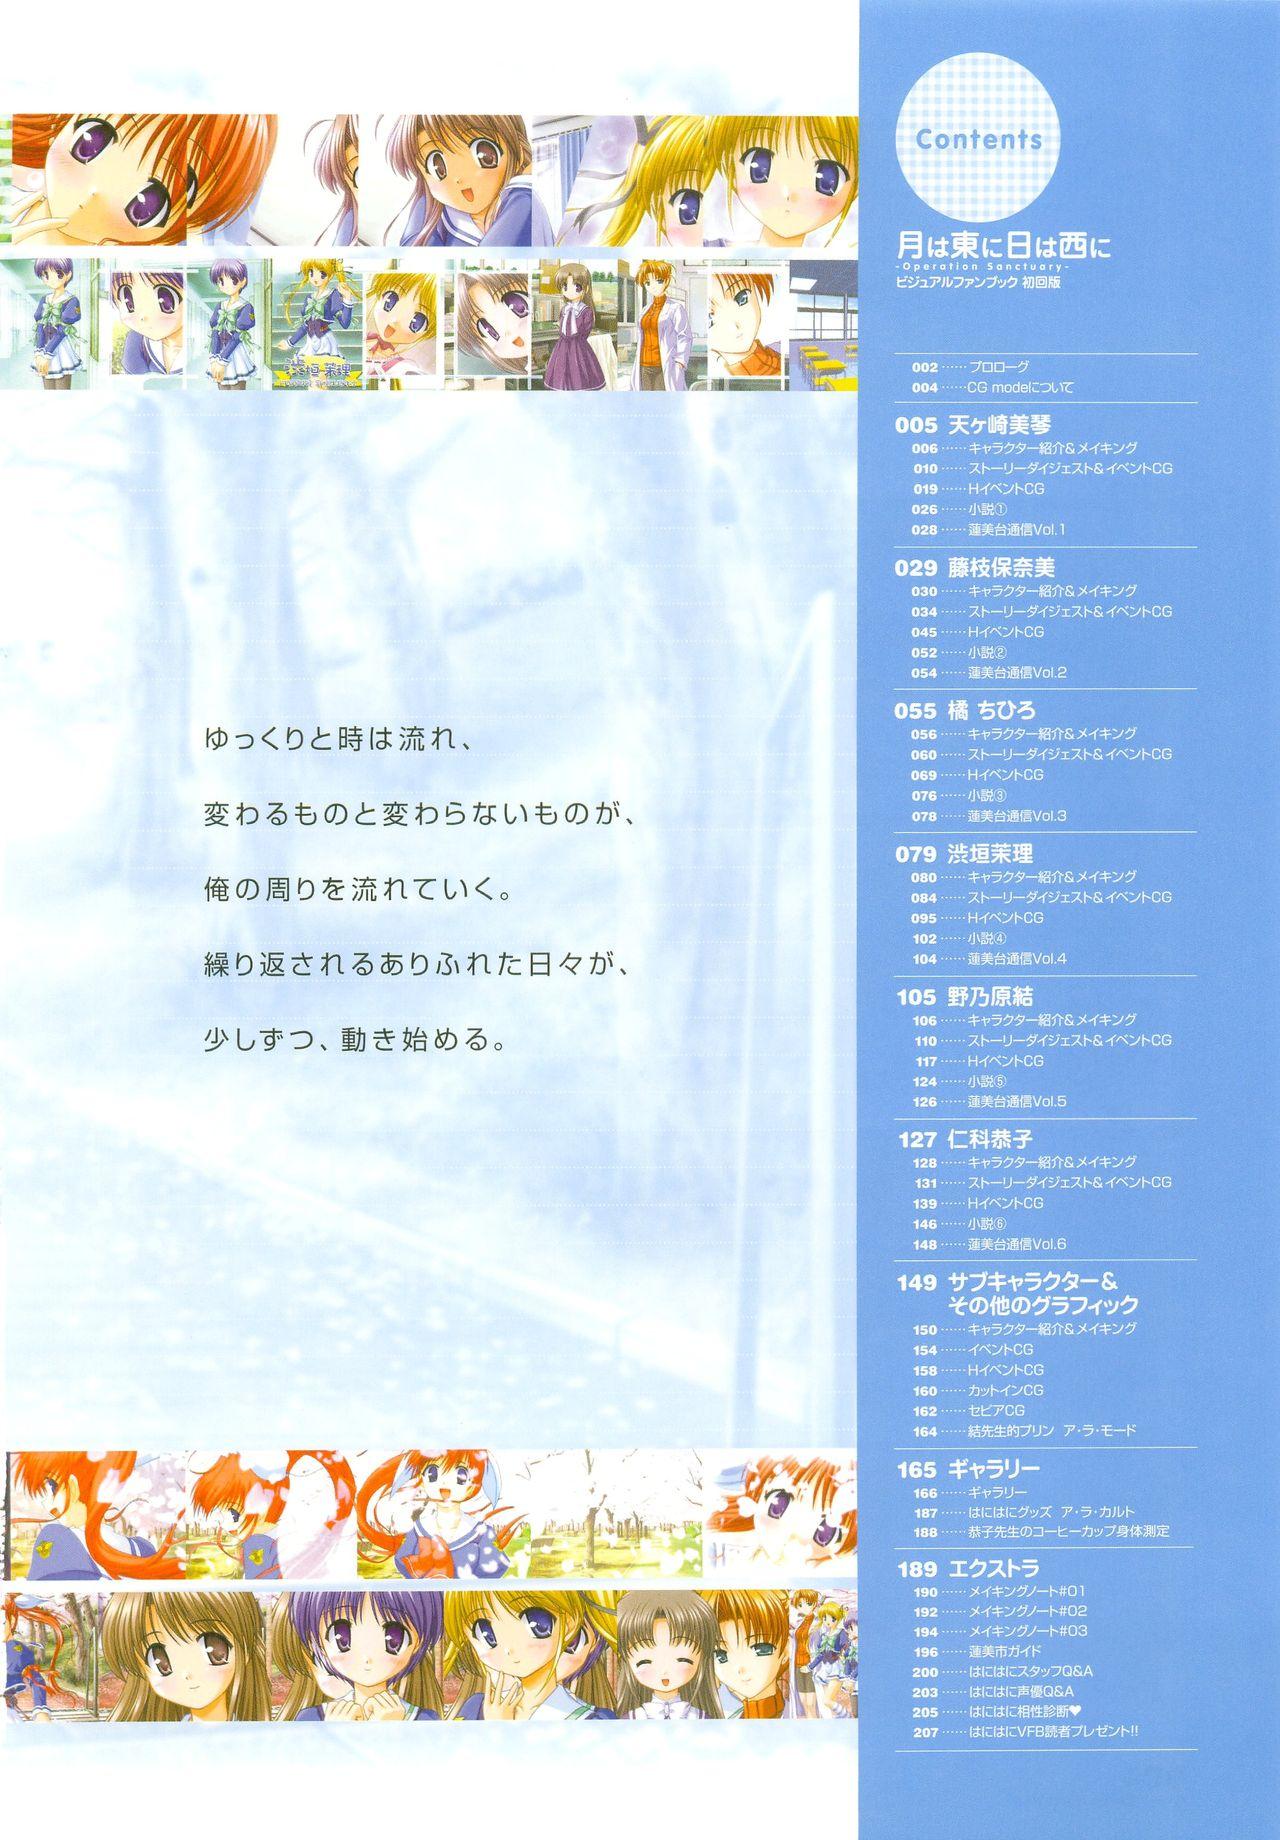 Tsuki wa Higashi ni Hi wa Nishi ni - Operation Sanctuary - Visual Fan Book Shokai Ban 8